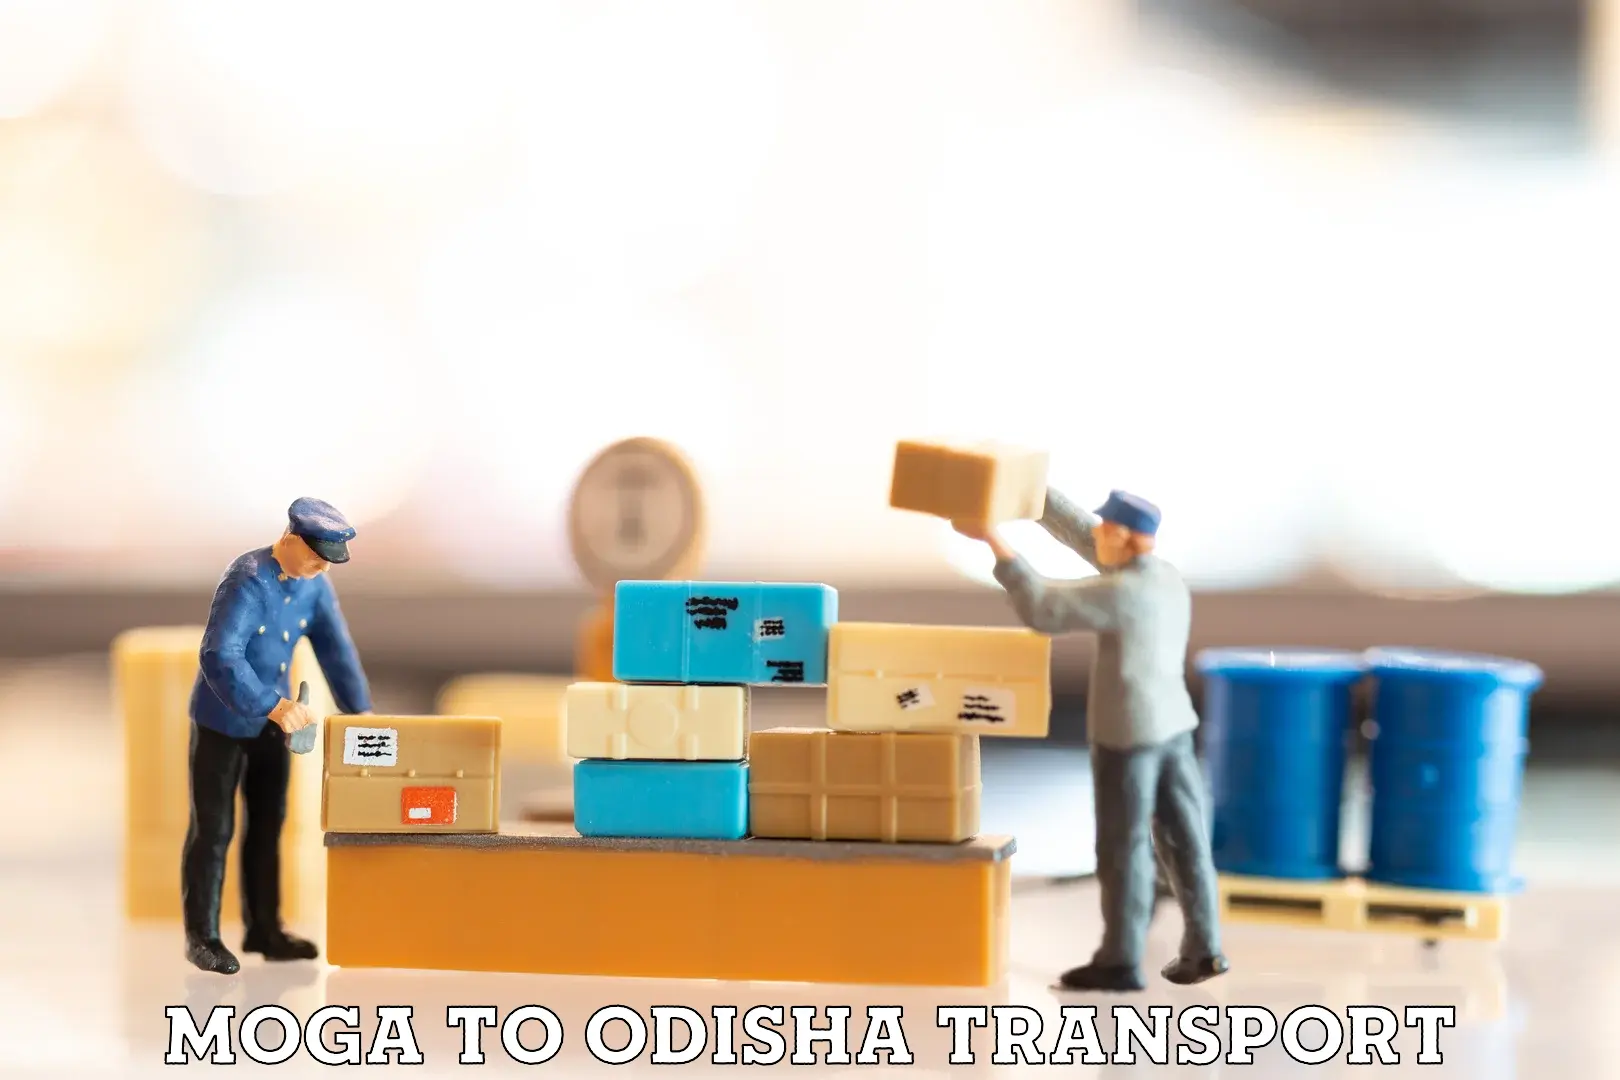 Nearest transport service Moga to Ukhunda